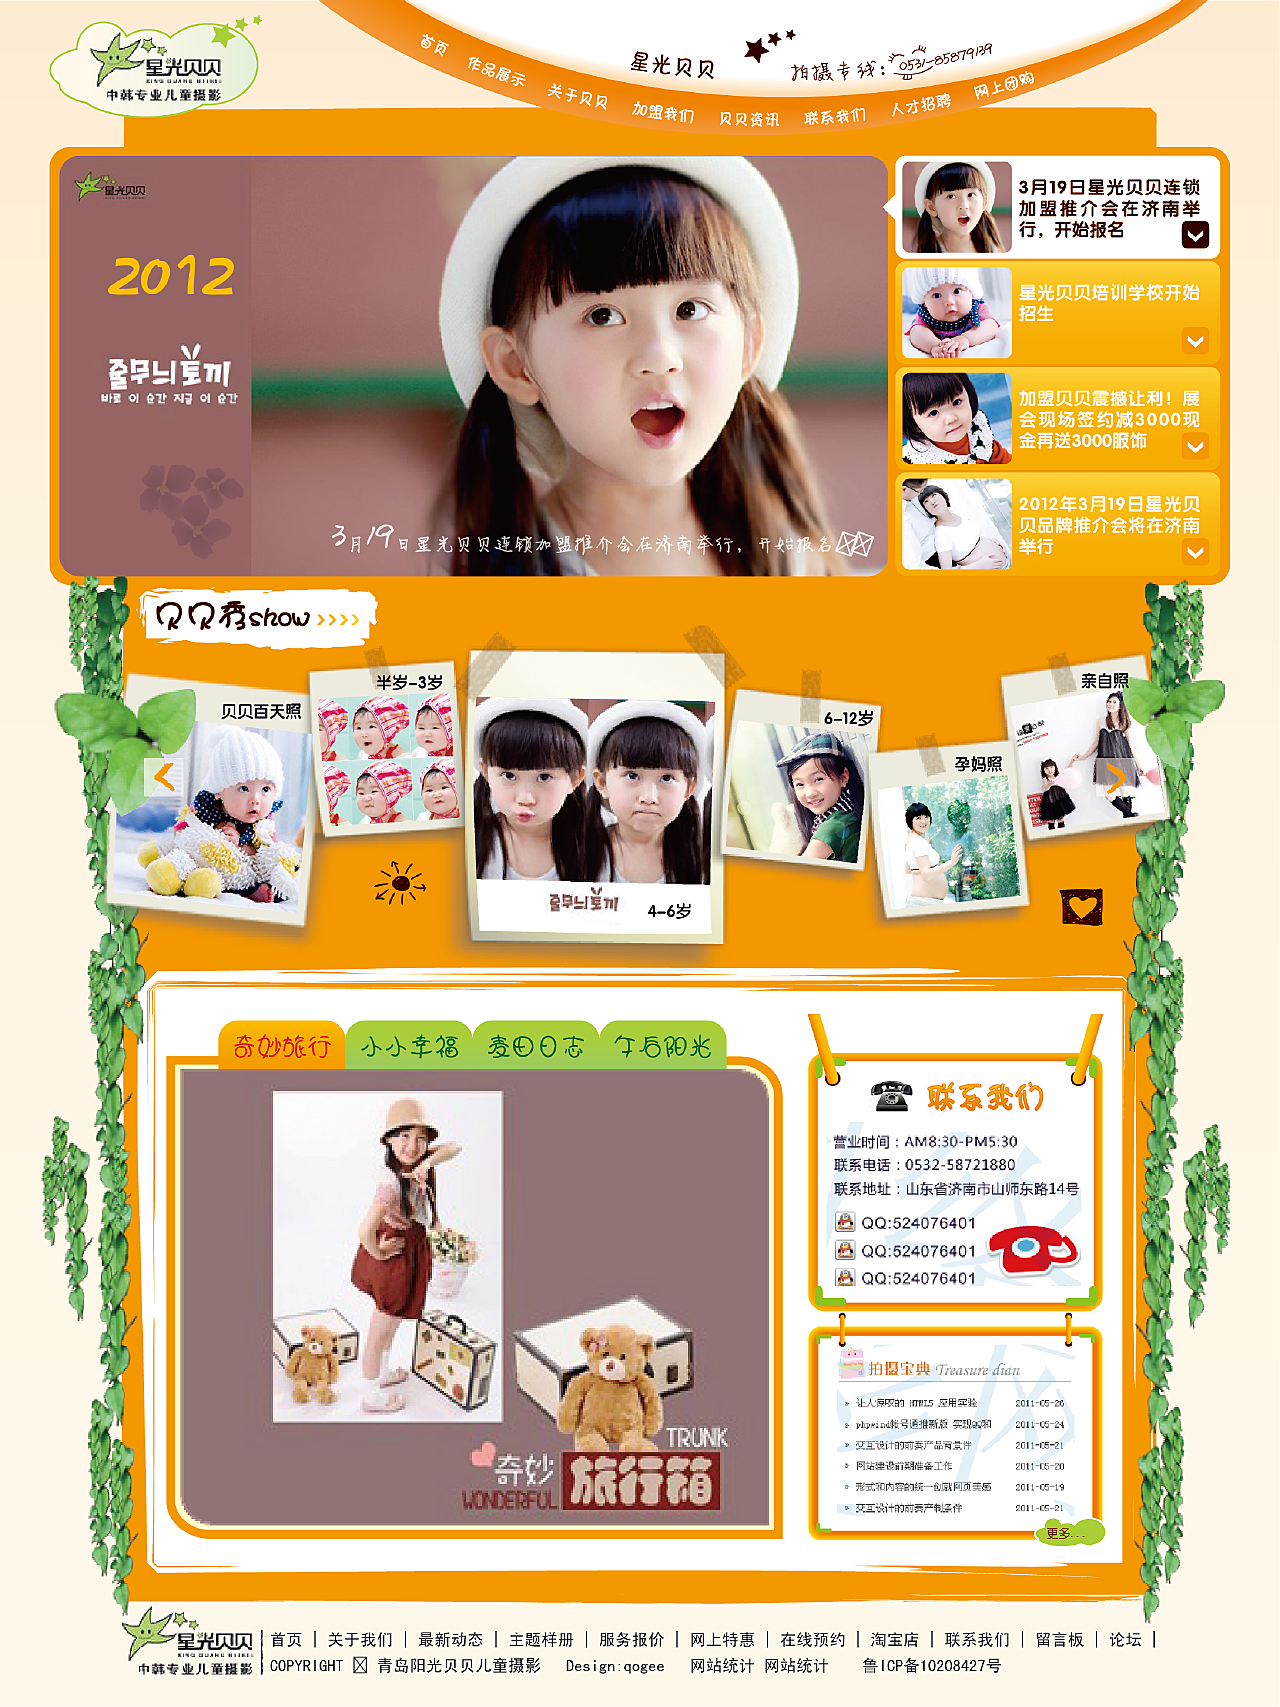 星光贝贝儿童摄影-CND设计网,中国设计网络首选品牌